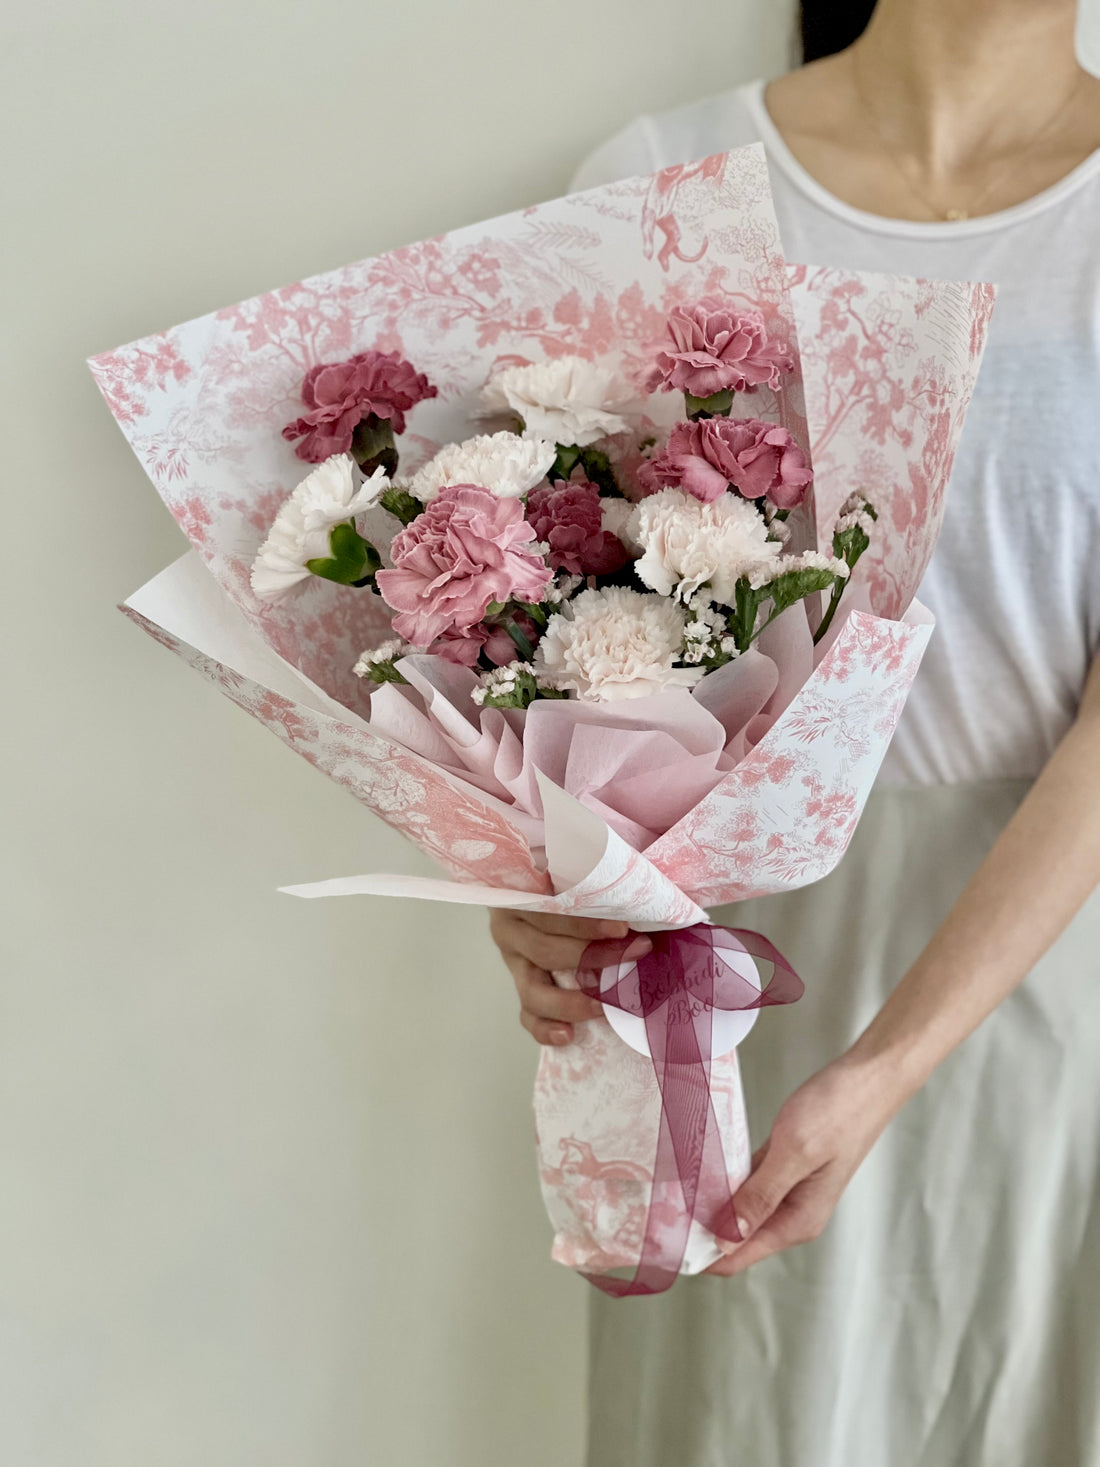 全世界最美麗的女人 母親節康乃馨鮮花花束